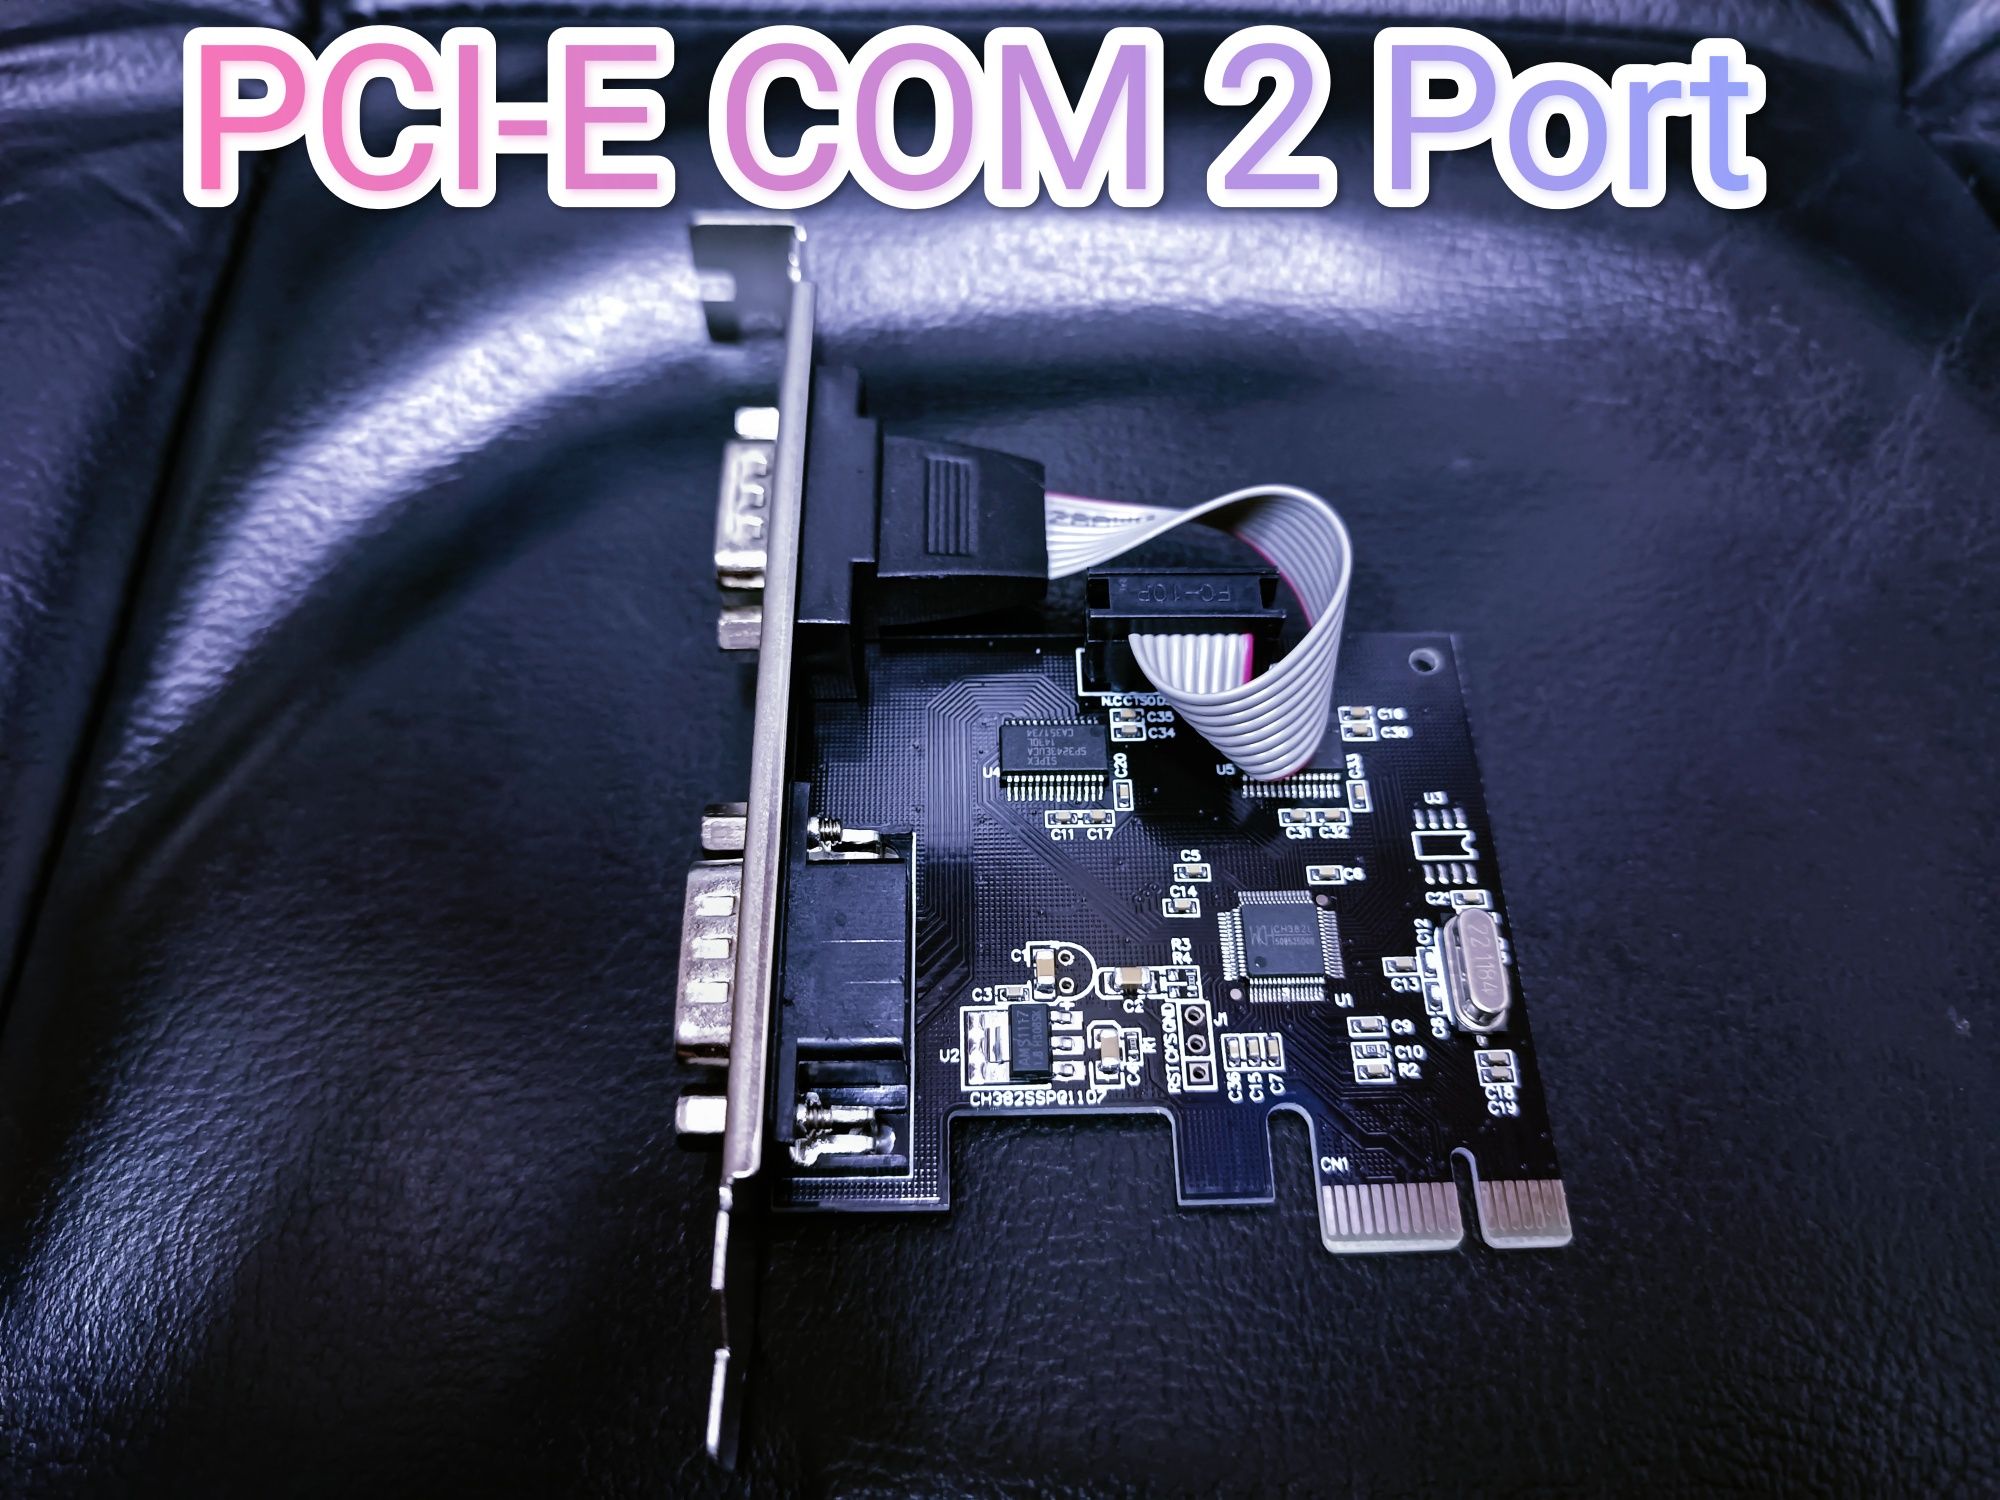 Pci-e com port контроллер rs232